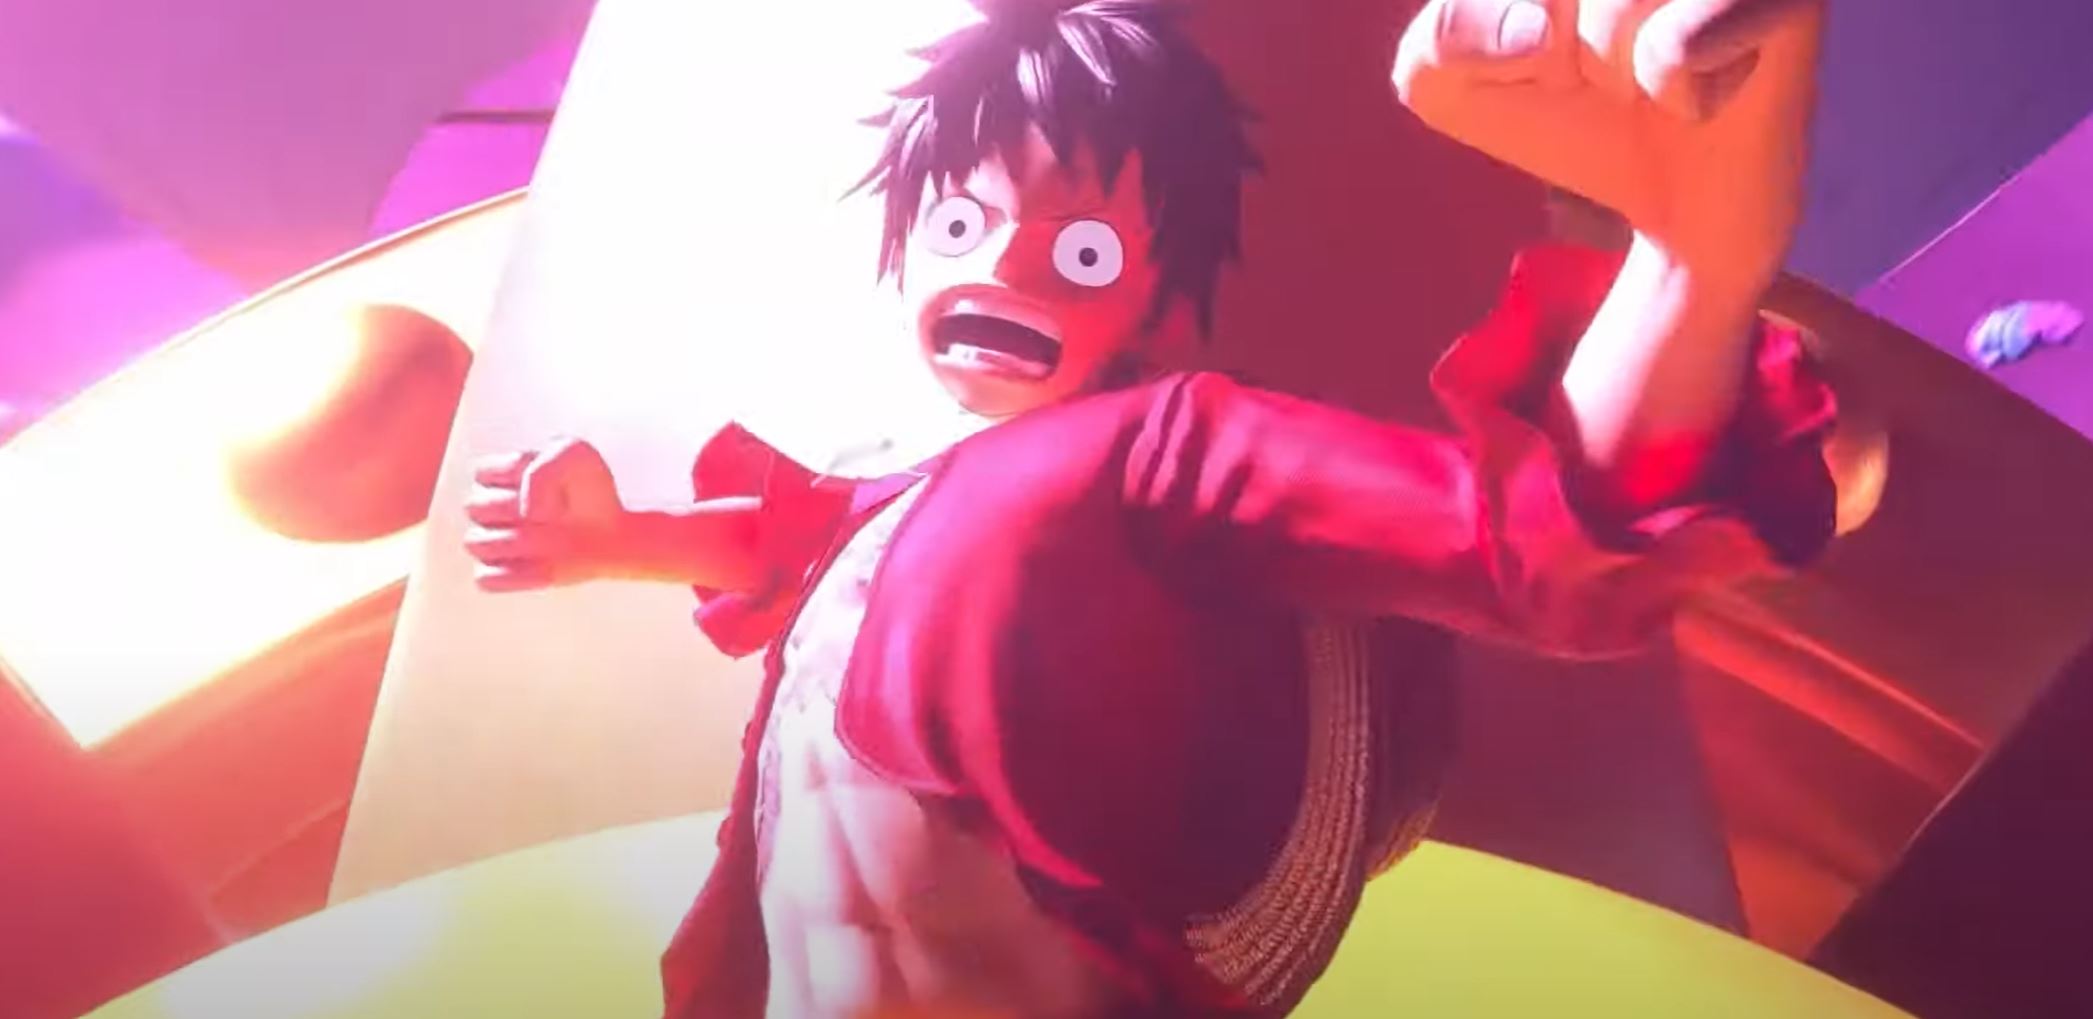 Petit aperçu de gameplay dans le trailer de One Piece Odyssey